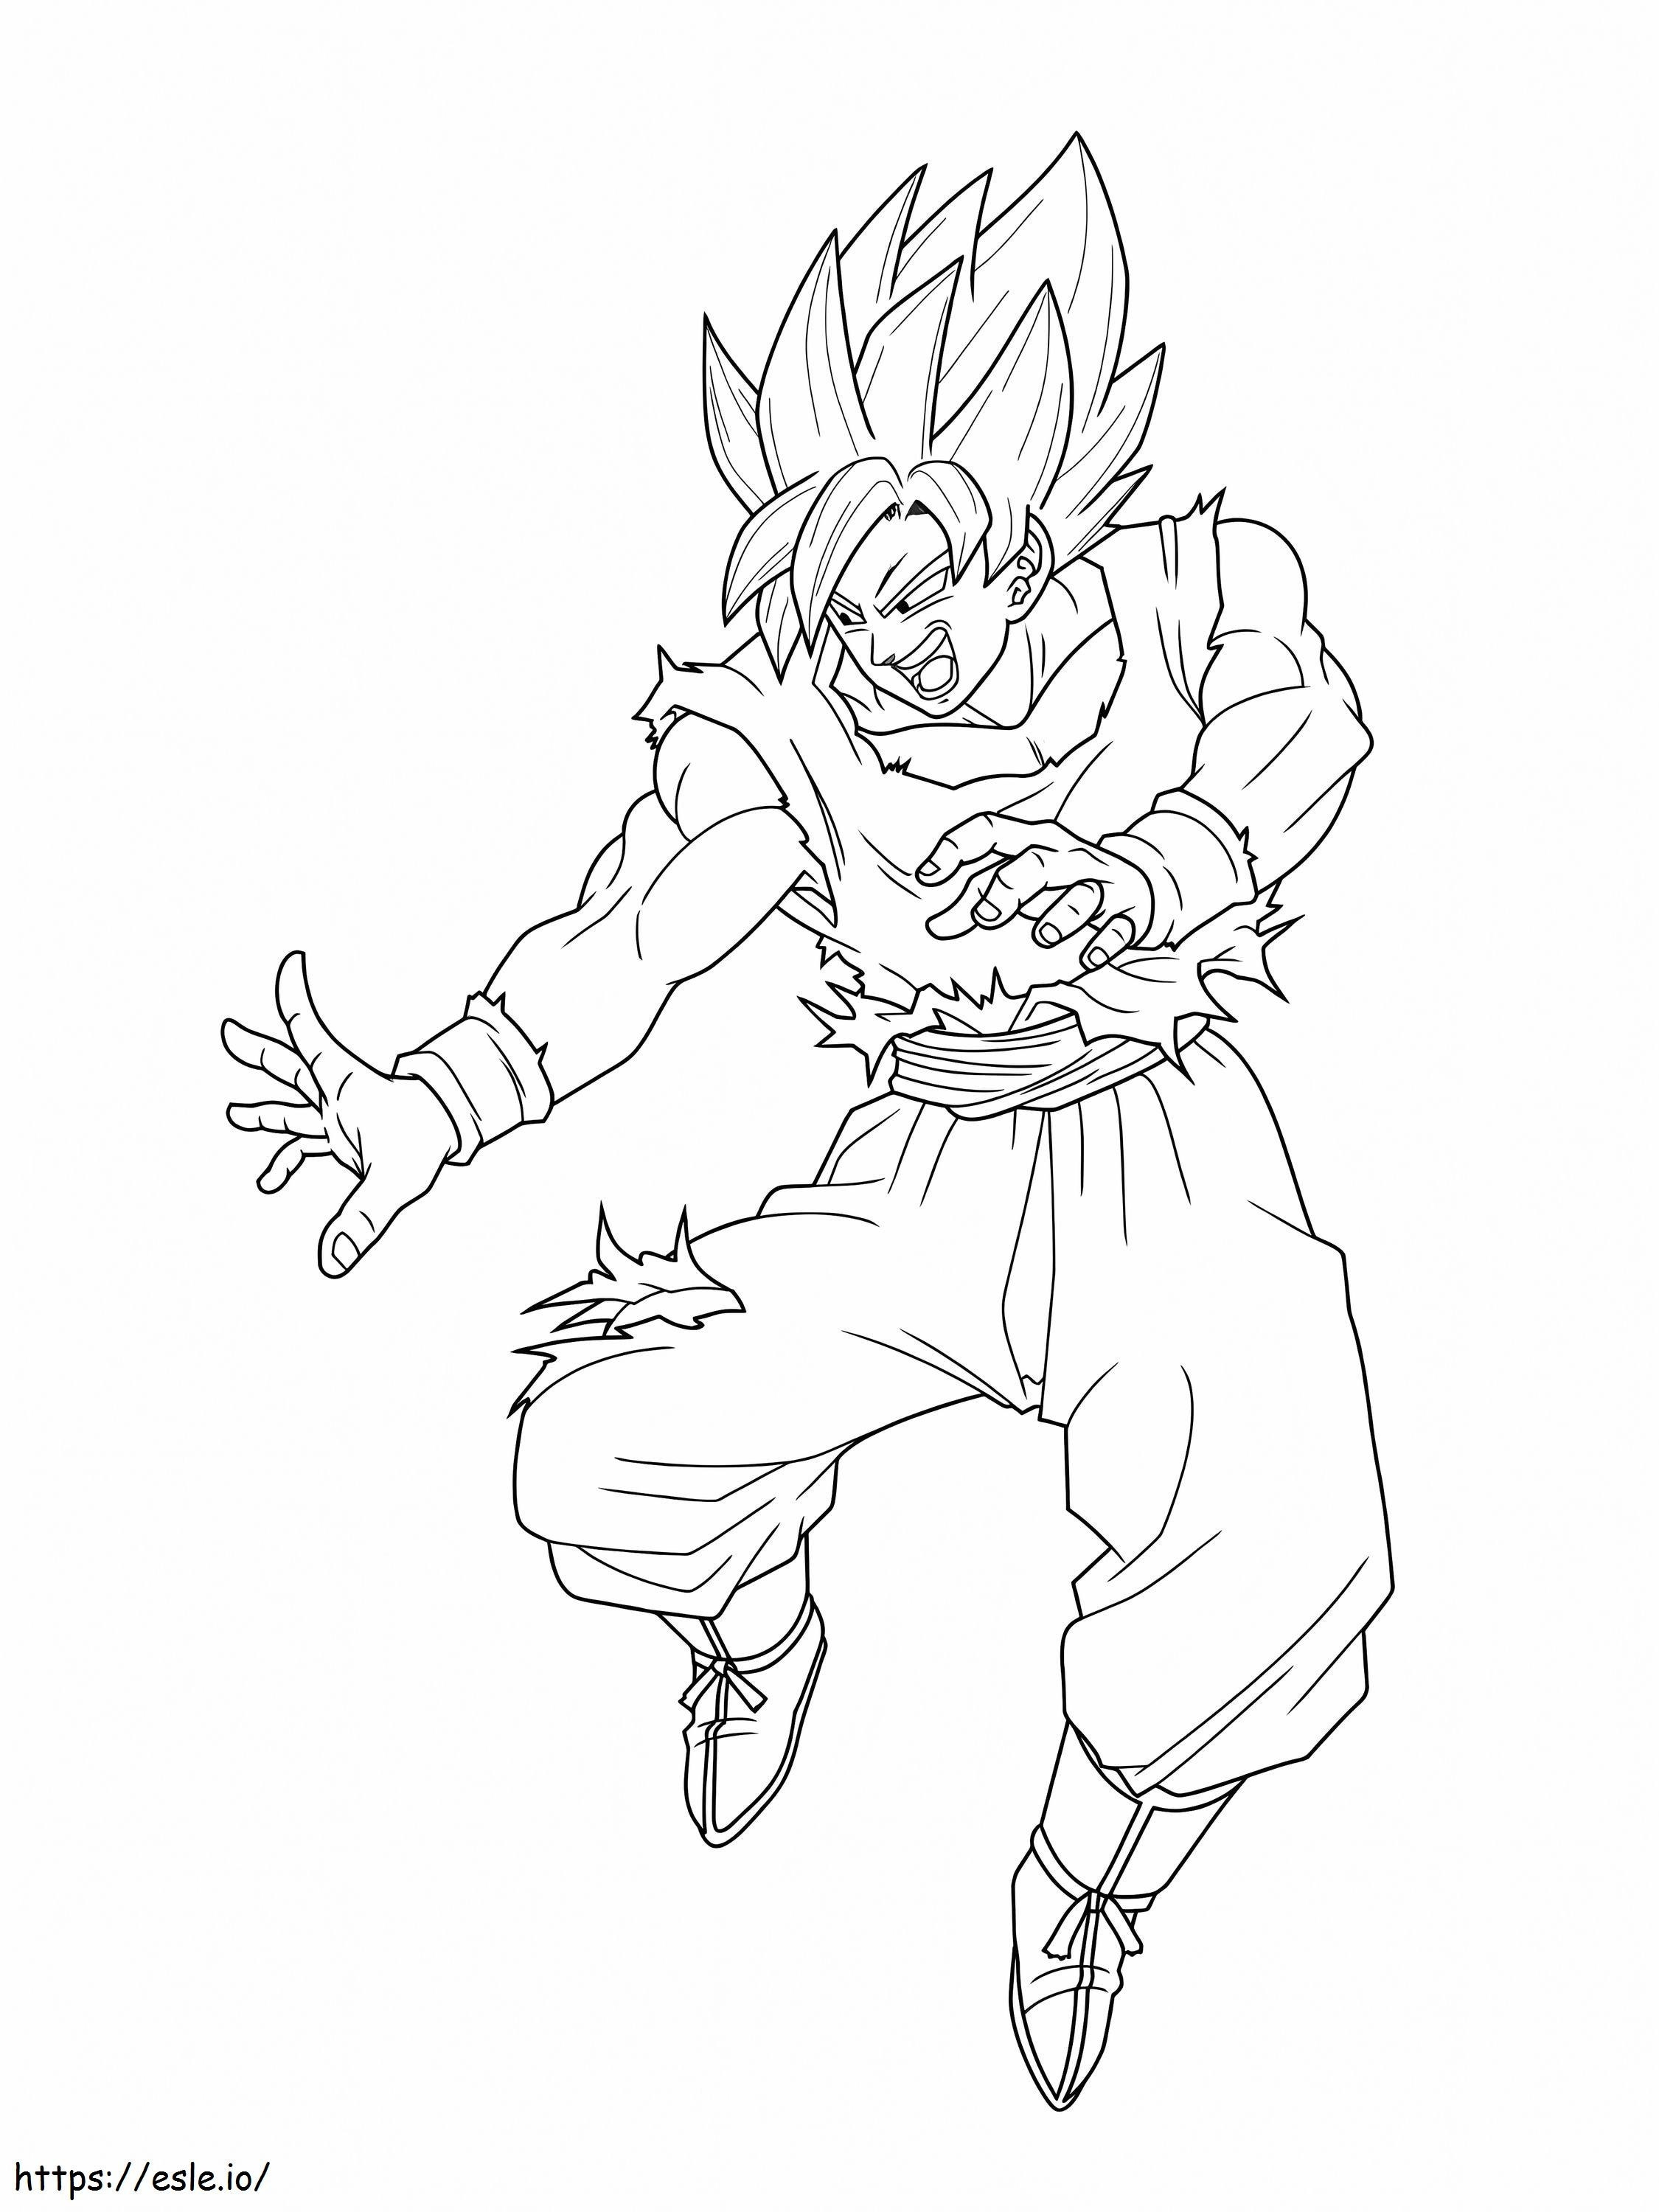 Goku SJ2 Arrabbiato da colorare